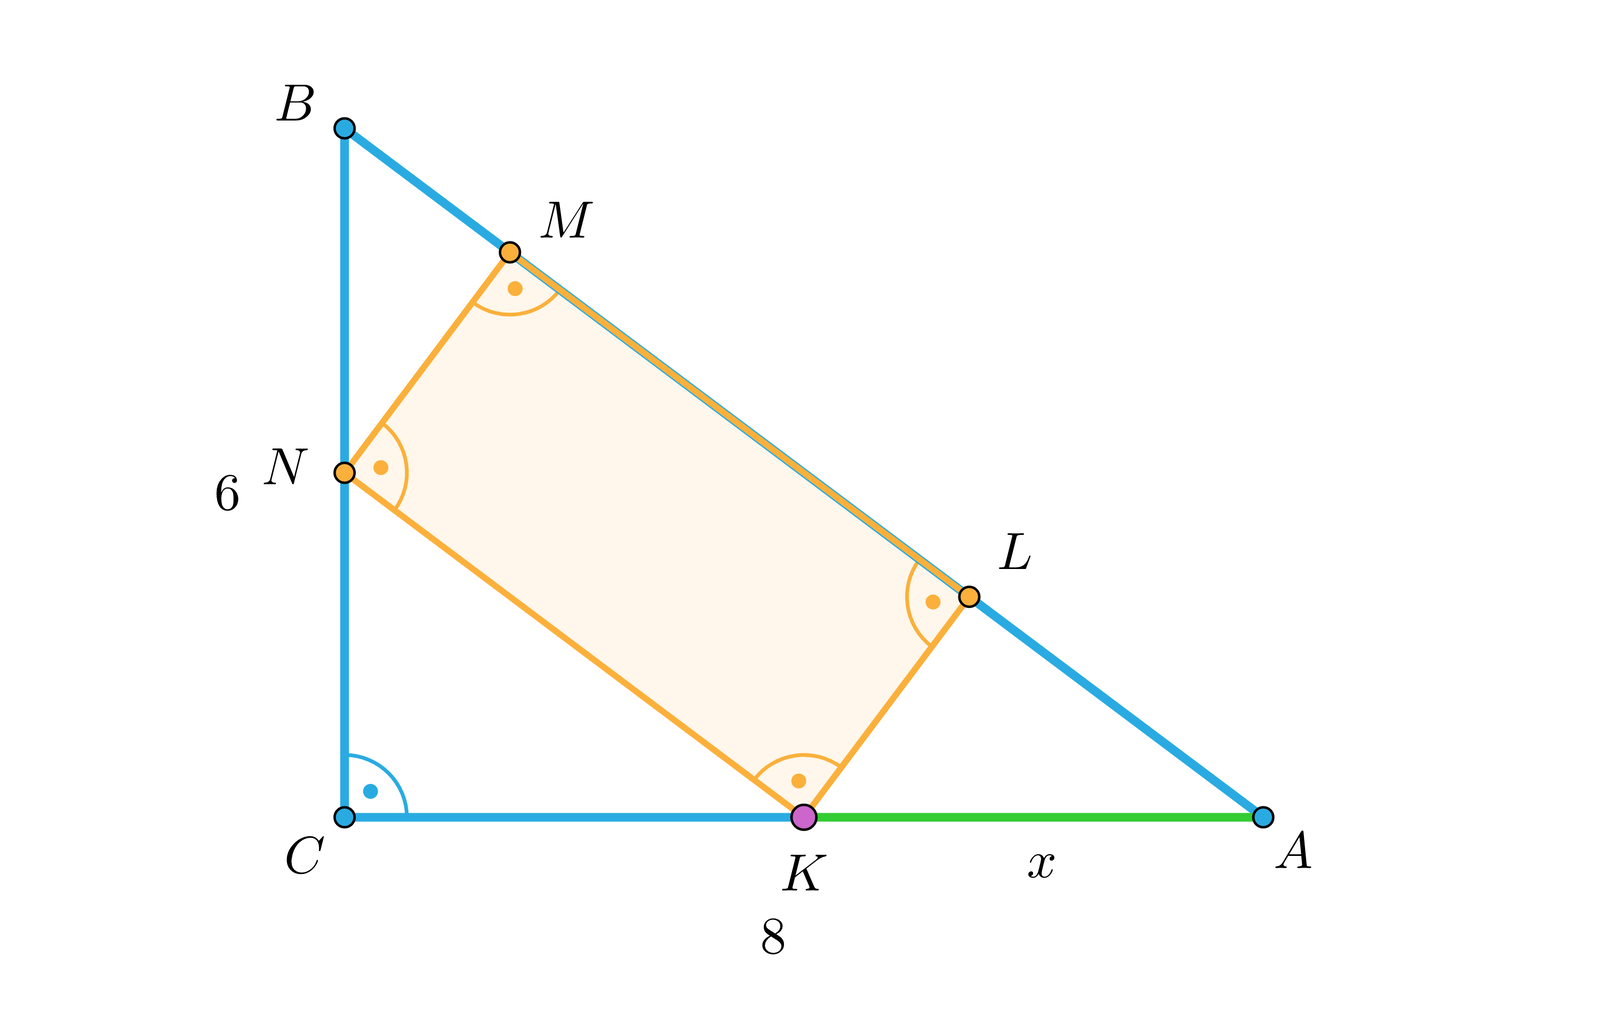 Aplet przedstawia trójkąt A B C. Długość przyprostokątnej A C wynosi 8 jednostek, a przyprostokątna B C ma miarę sześć. W jego środku znajduję się prostokąt K L M N. Krawędzie prostokąta dzielą trójkąt na trzy mniejsze. Pierwszy A K L, drugi K N C oraz trzeci N B M. Przesuwając kursorem zmieniamy długości boków prostokąta, jednocześnie zmieniając wielkości trójkątów.  Przykład pierwszy.  Przesuwając kursor na środek paska uzyskaliśmy długość x, czyli odcinek A K równą cztery przecinek jeden. A pole prostokąta wynosi 11 przecinek 99 jednostek.  Przykład drugi.  Rozszerzając bok prostokąta wzdłuż przeciwprostokątnej uzyskujemy długość x równą 1 przecinek 6 jednostek, a pole równe 7 przecinek 68 jednostek. Przykład trzeci.  Rozszerzając bok prostokąta wzdłuż przyprostokątnych uzyskujemy długość x równą 7 przecinek 2 jednostki, a pole prostokąta równe 4 przecinek 32 jednostki. 